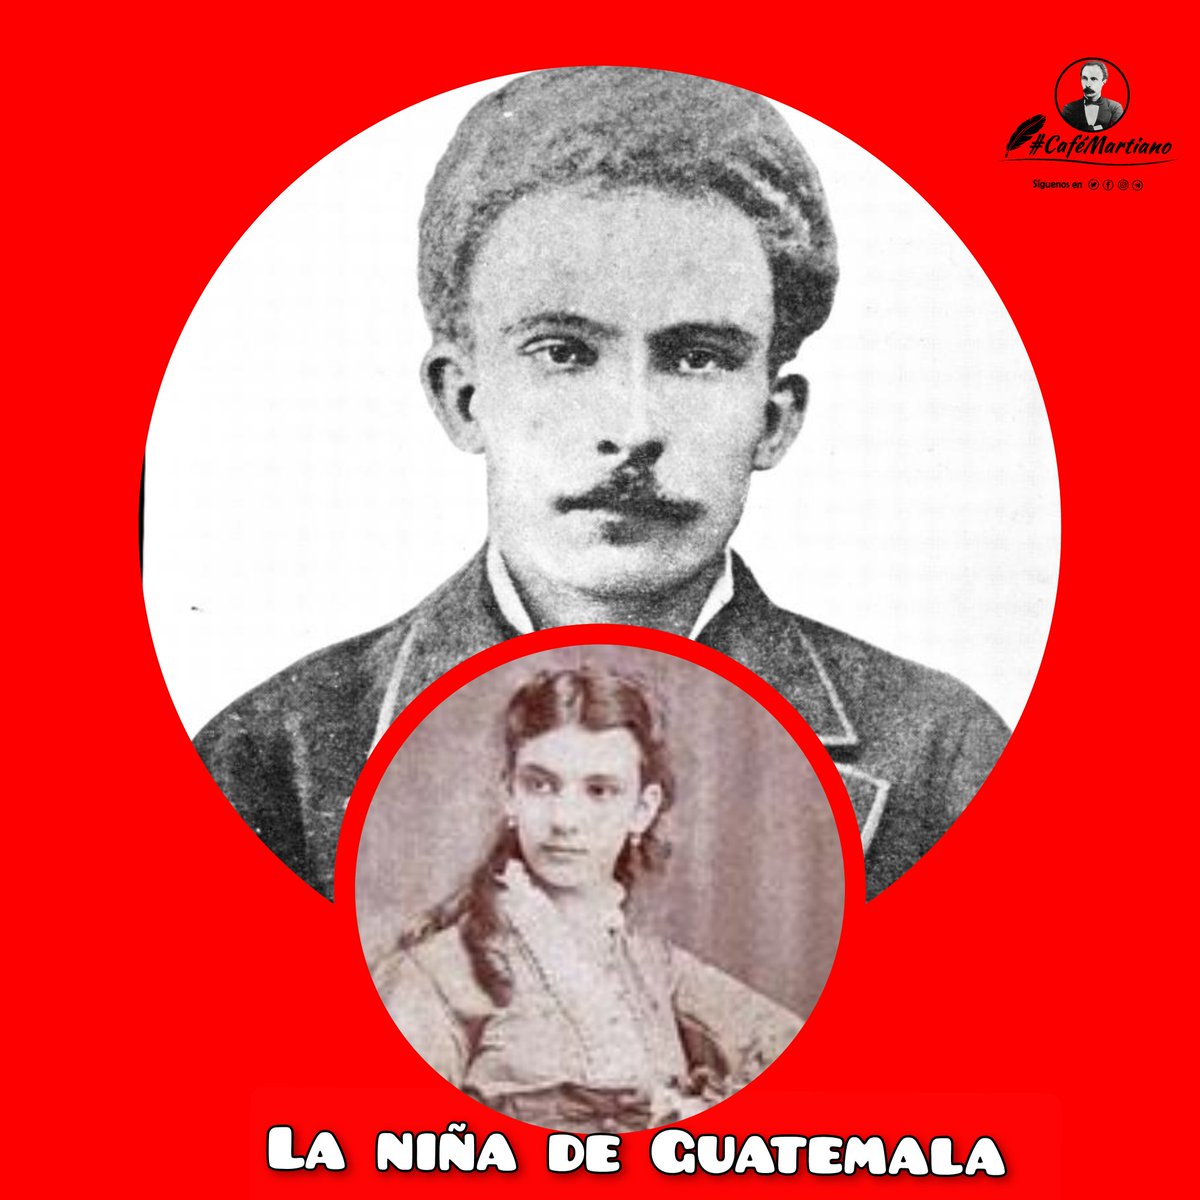 @cafemartiano @DiazCanelB @InesMChapman @TeresaBoue @EVilluendasC @agnes_becerra @IzquierdaUnid15 @ValoresTeam1 @mimovilespatria @DeZurdaTeam_ @GHNordelo5 #CaféMartiano hoy recuerda un idilio, un amor frustrado y los versos de homenaje del Apóstol a La niña de Guatemala.